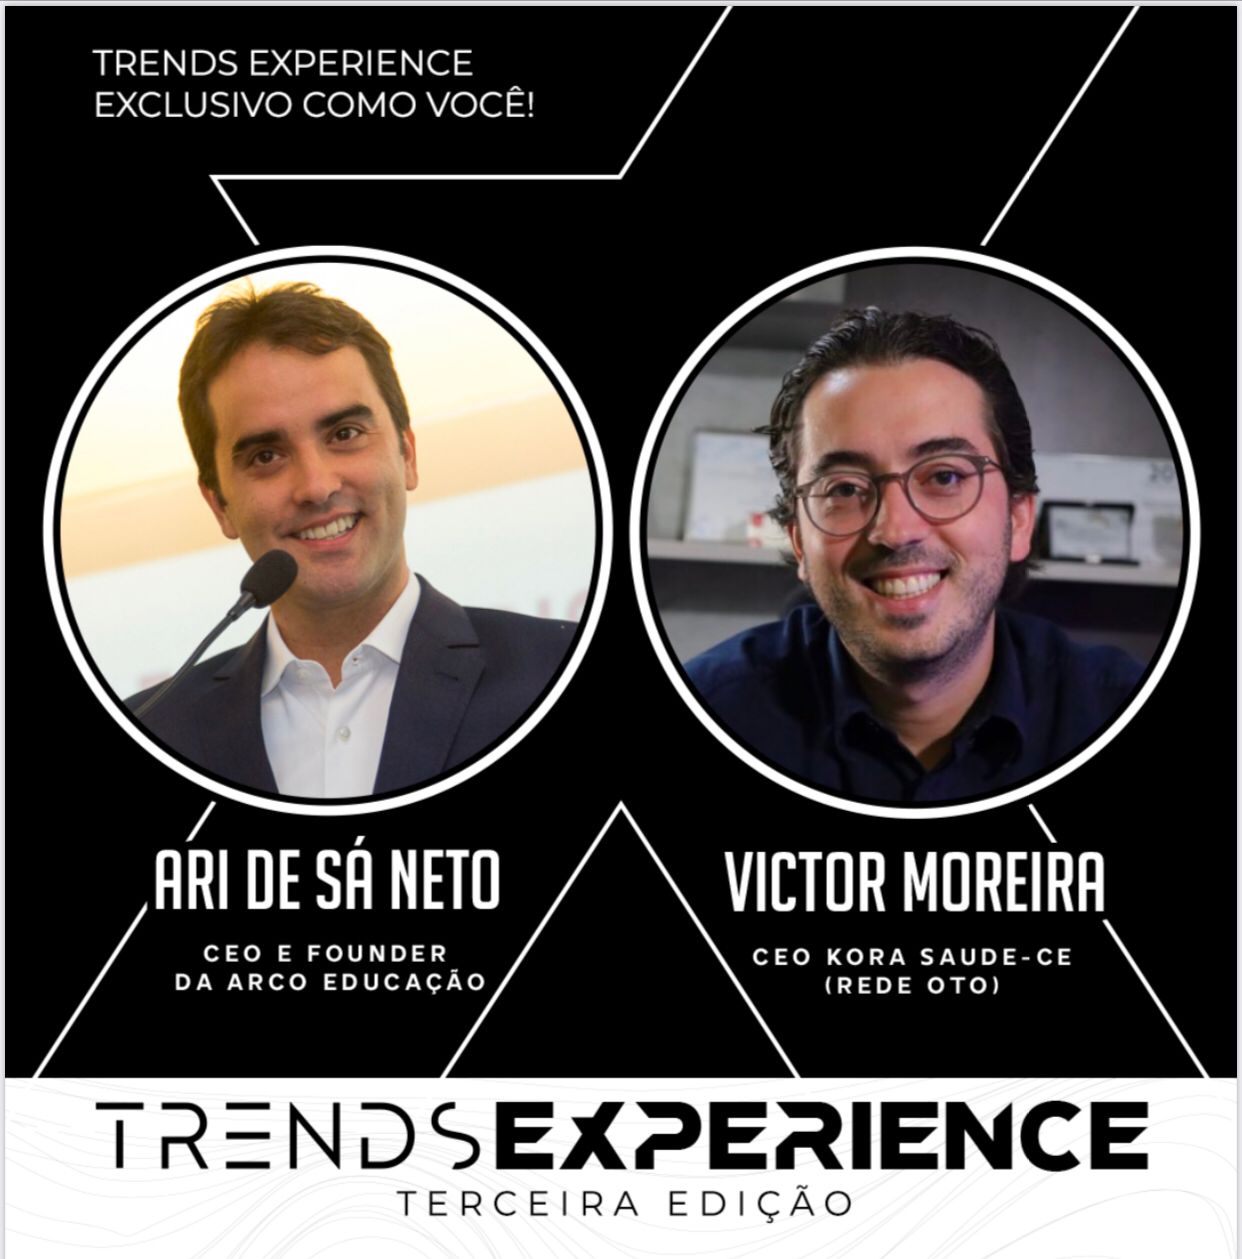 Ari de Sá Neto e Victor Moreira são convidados para a terceira edição do Trends Experience